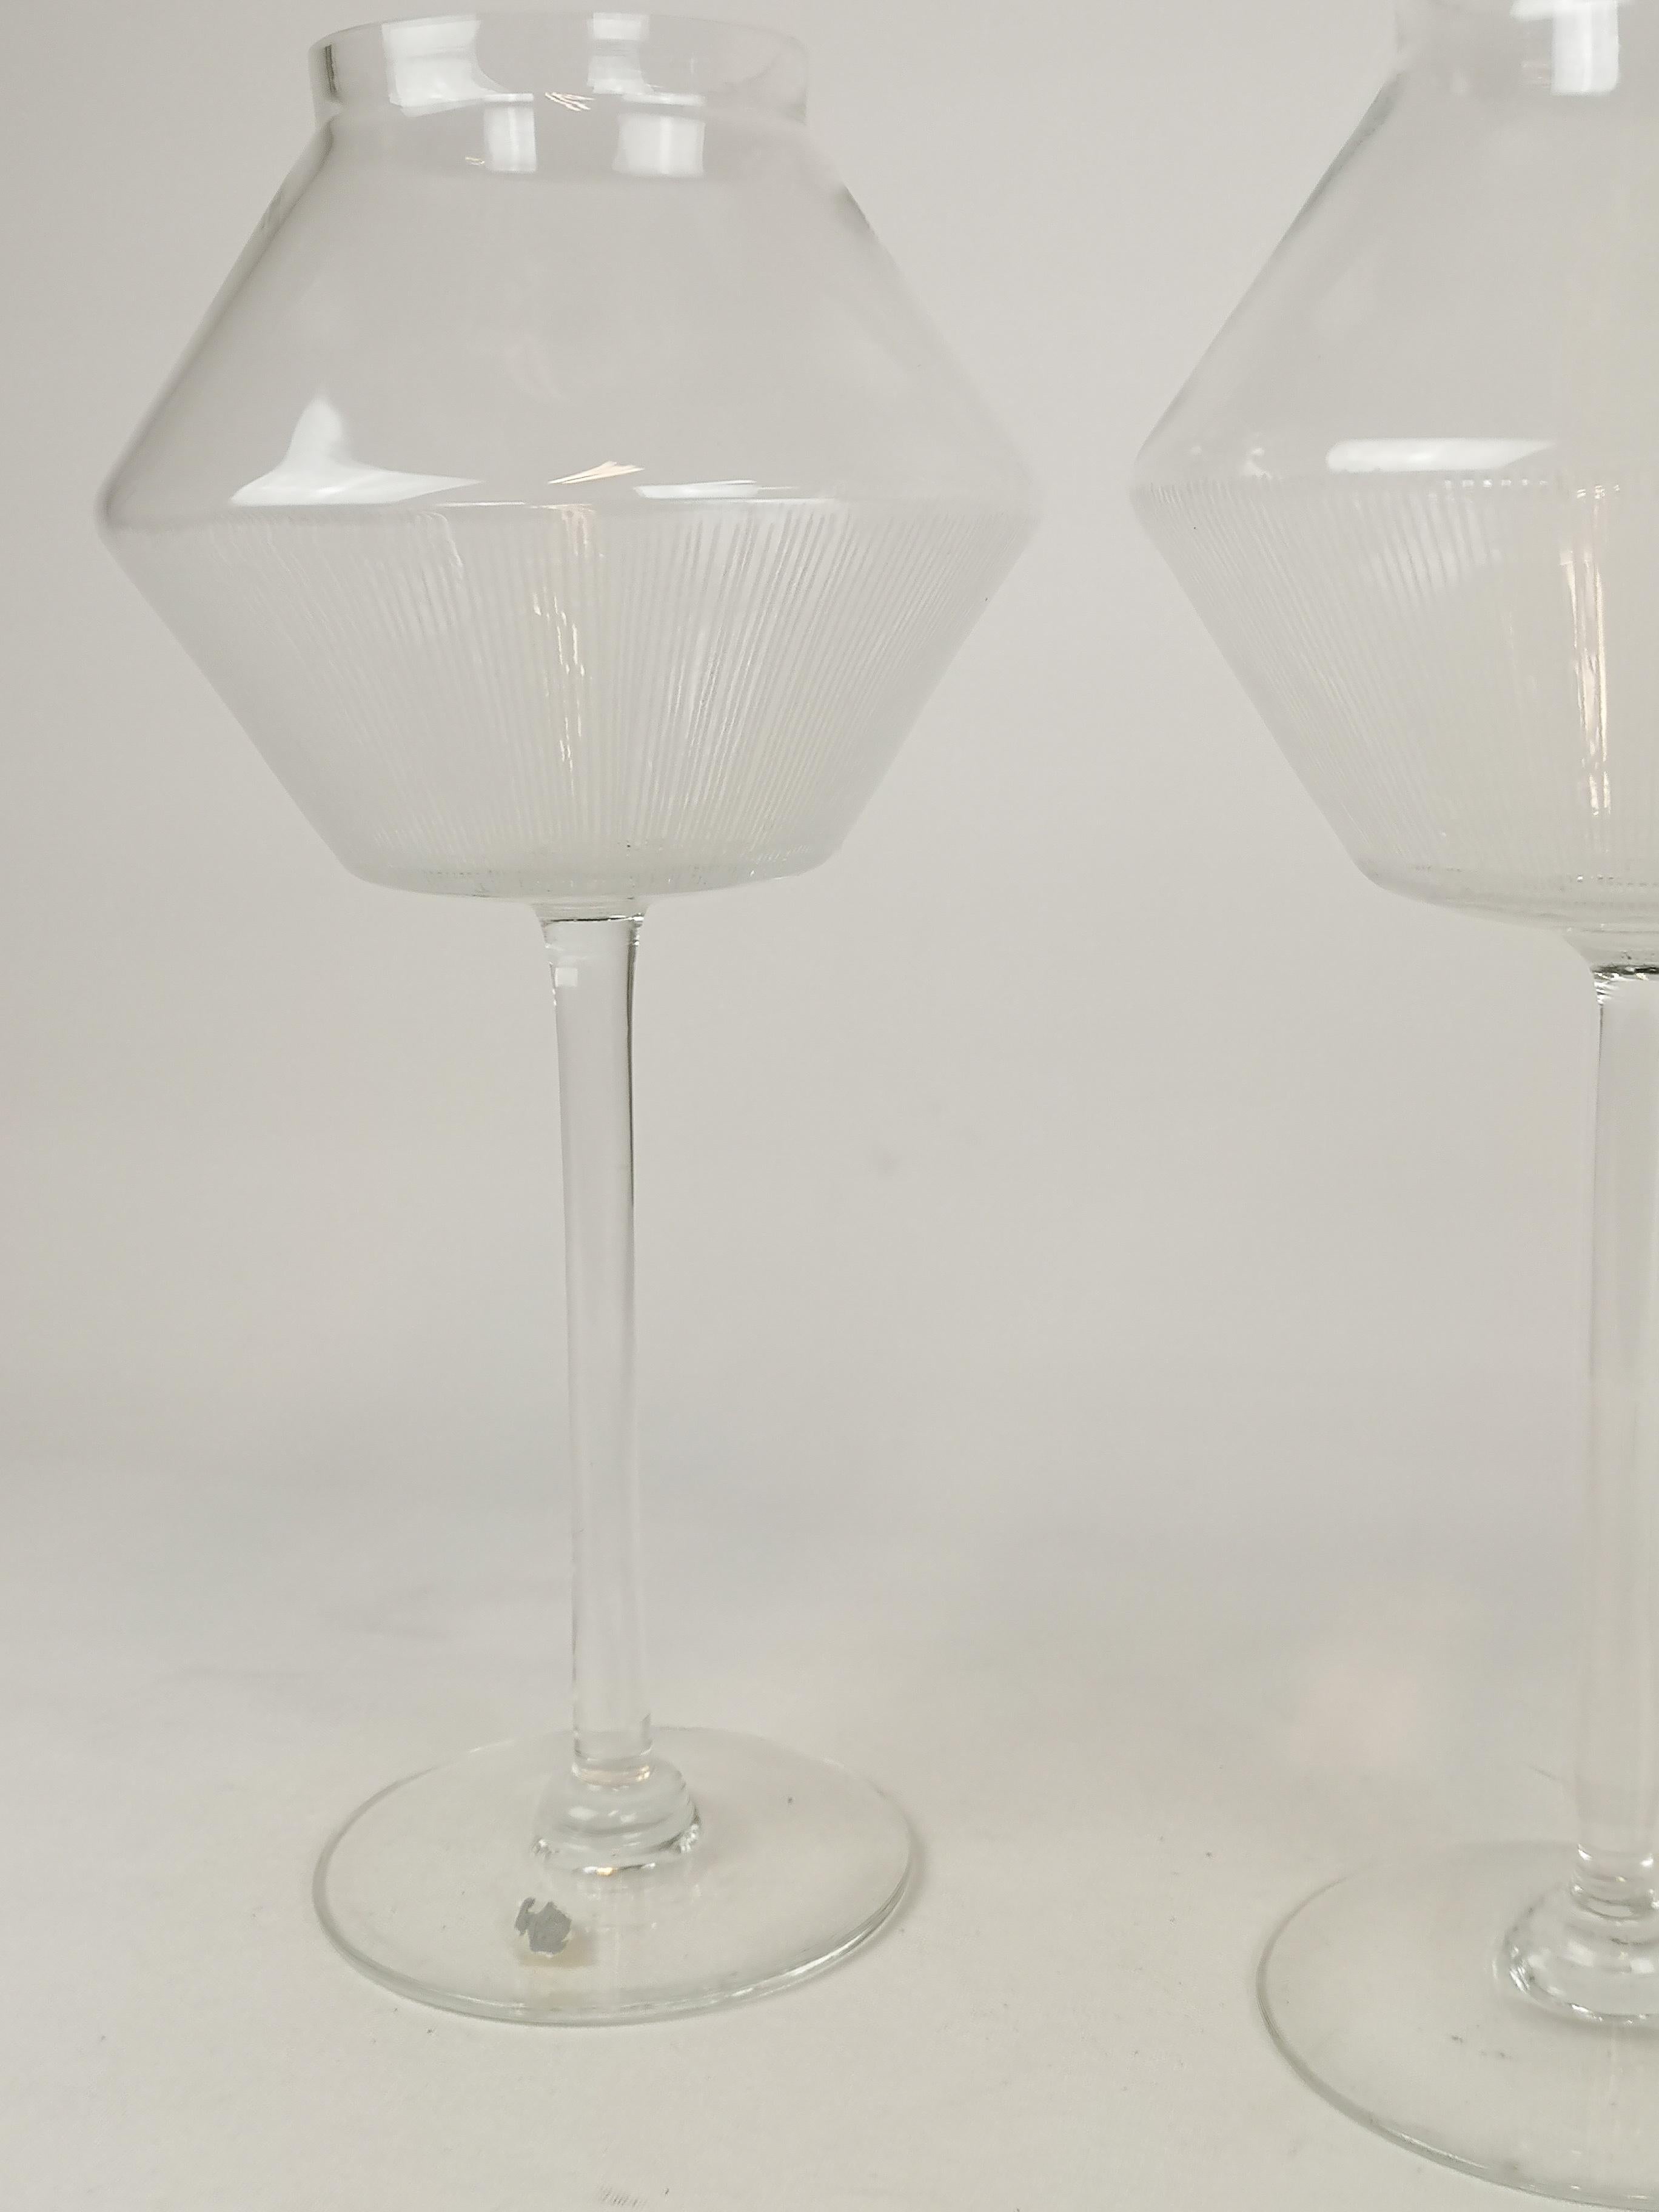 Diese 2 seltenen Gläser wurden in Johansfors Schweden hergestellt und von Bengt Orup in den 1950er Jahren entworfen. Die großen Kerzenhalter sind mit Streifen auf dem Glas versehen, ähnlich wie bei der Serie Strikt. 

Sehr guter Zustand.

Maße: